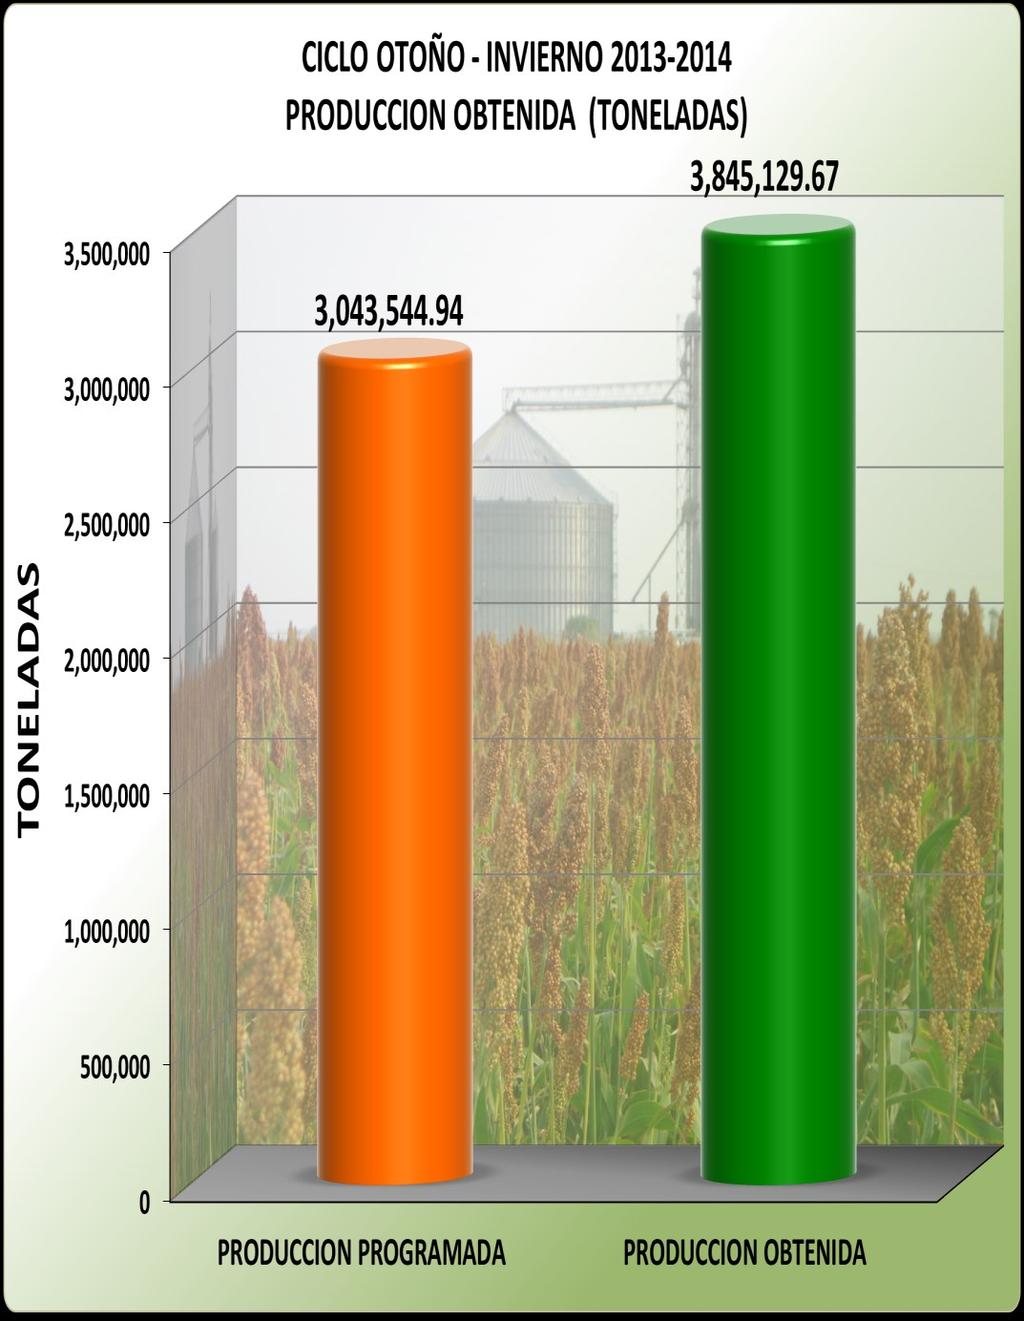 Este ciclo cerro sus cosechas en el mes de Septiembre y el cultivo de sorgo grano alcanzó su mayor producción con 3,147,880 Ton, una cifra record en cuanto a producción de este cultivo solamente en